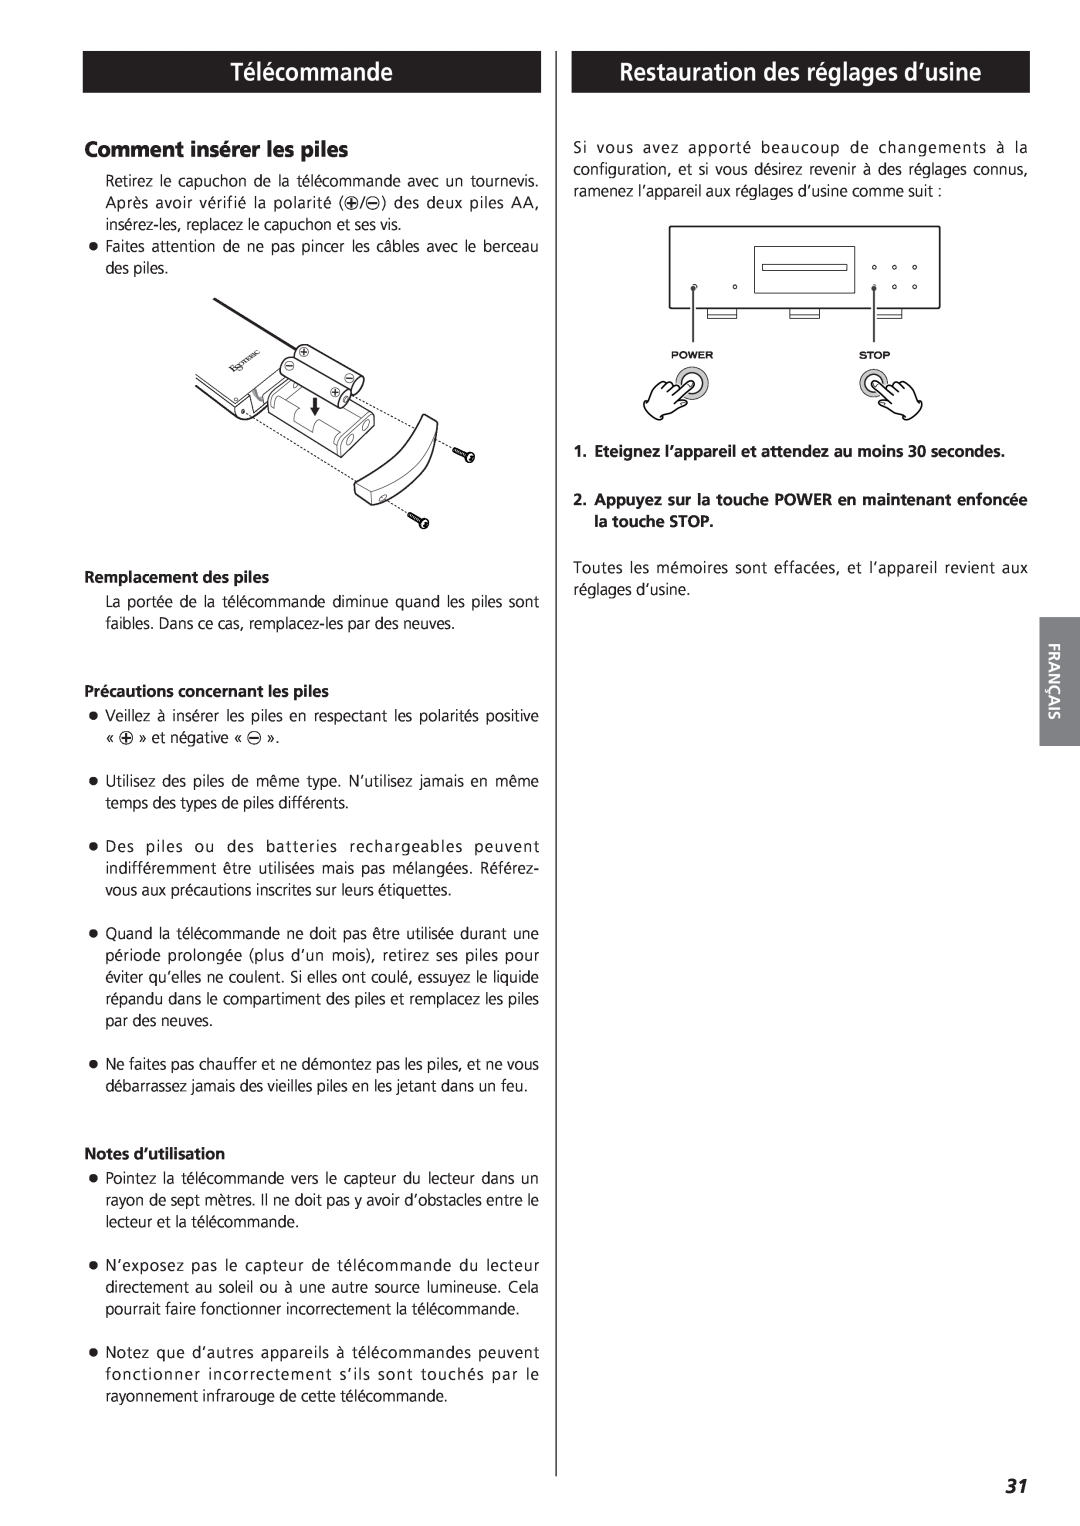 Teac X-01 D2 owner manual Télécommande, Restauration des réglages d’usine, Comment insérer les piles, Français 